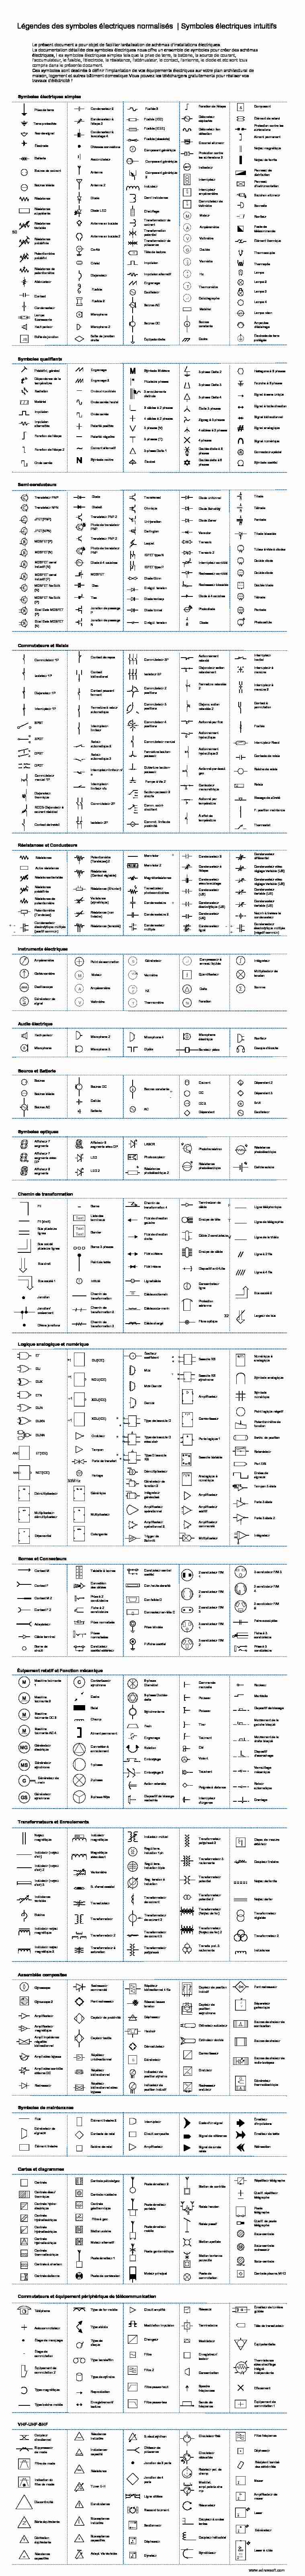 [PDF] Légendes des symboles électriques normalisés - Edraw